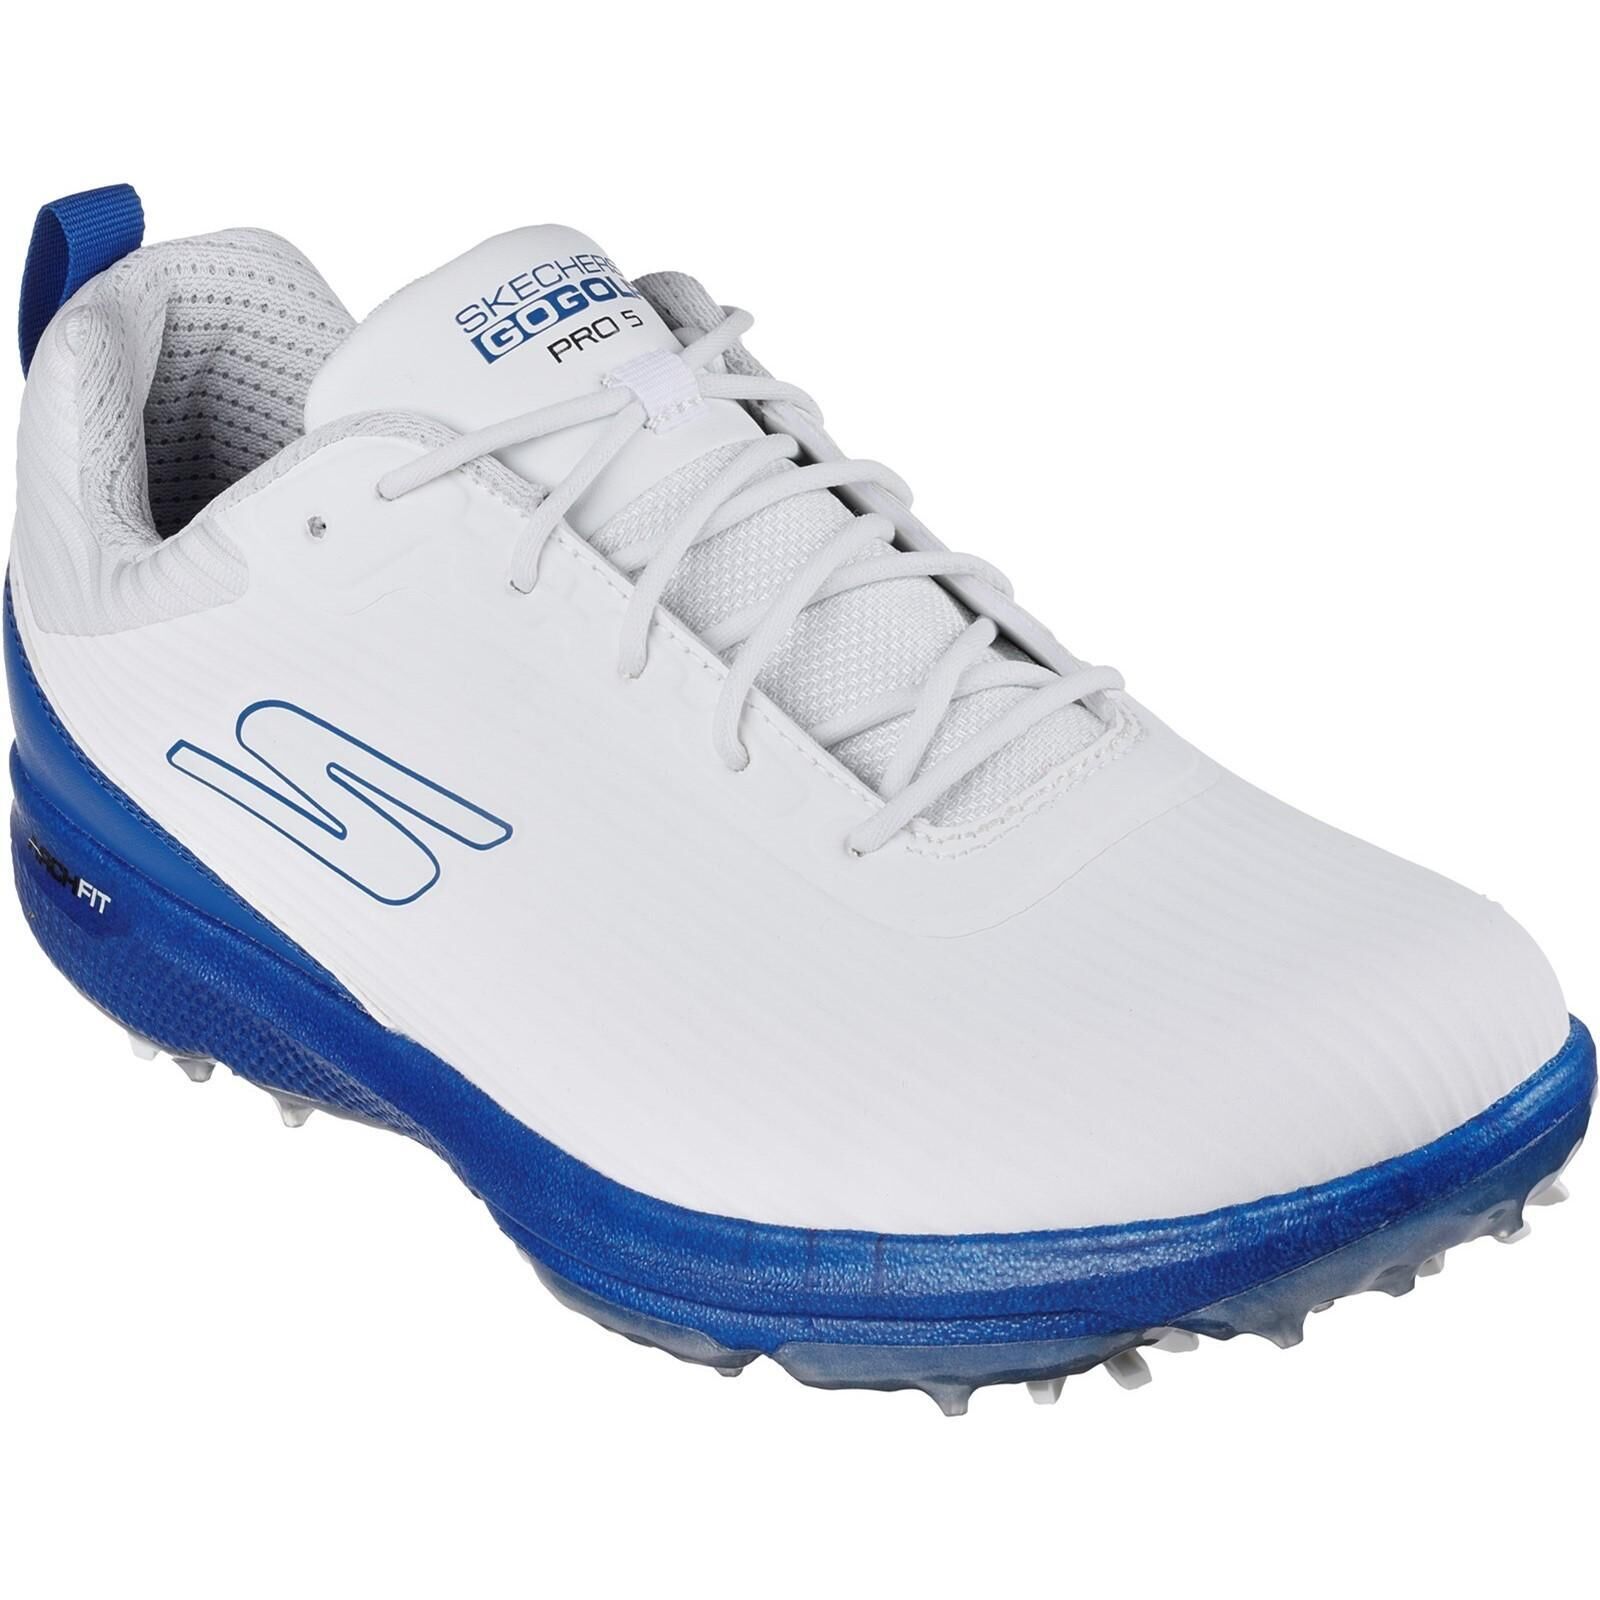 SKECHERS Mens Go Golf Pro 5 Hyper Golf Shoes (White/Blue)